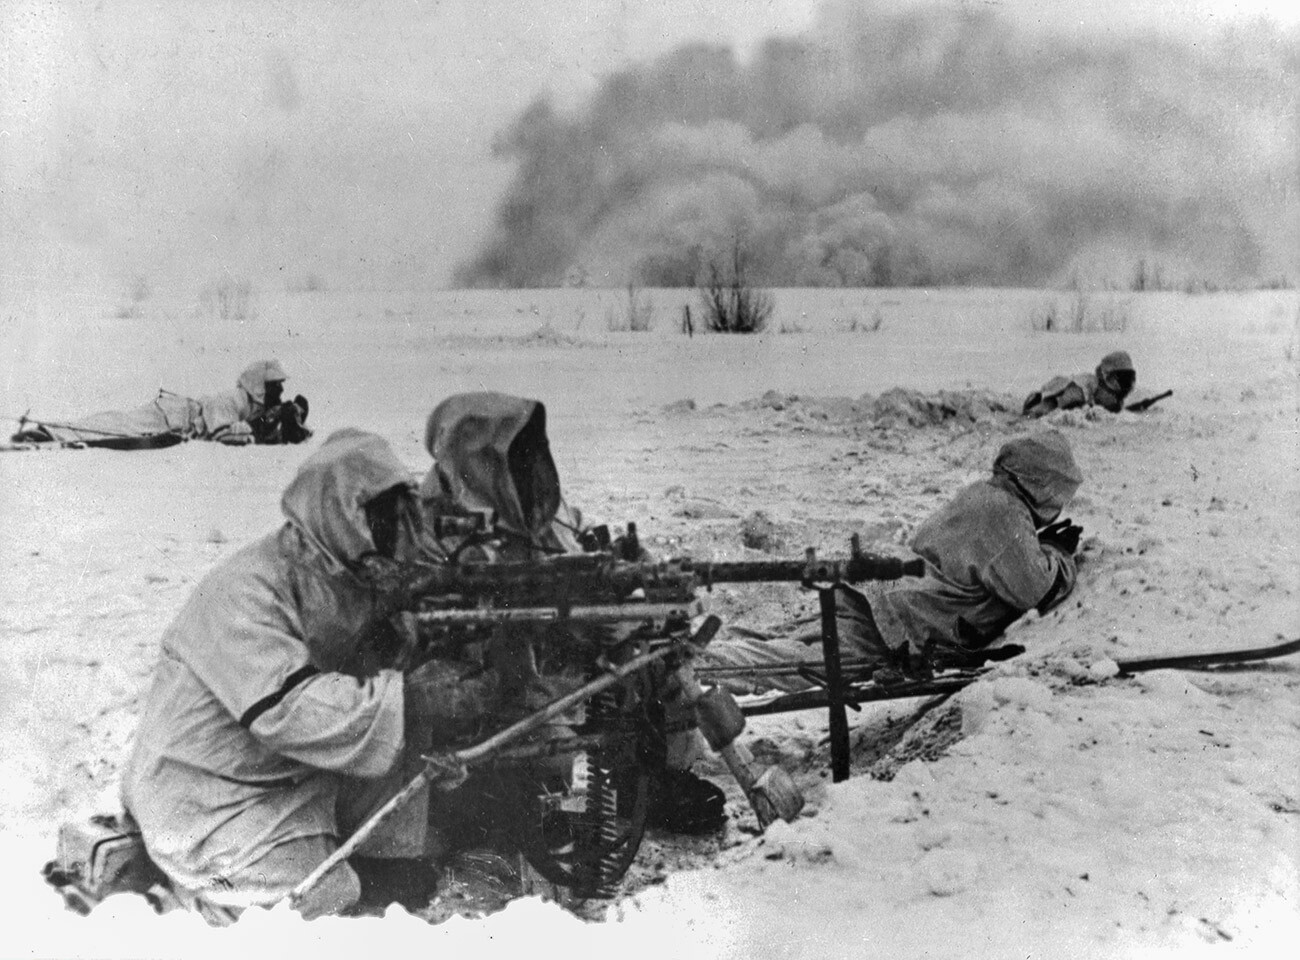 Deutsche Soldaten kämpfen in Stalingrad während des Zweiten Weltkriegs, Dezember 1942.